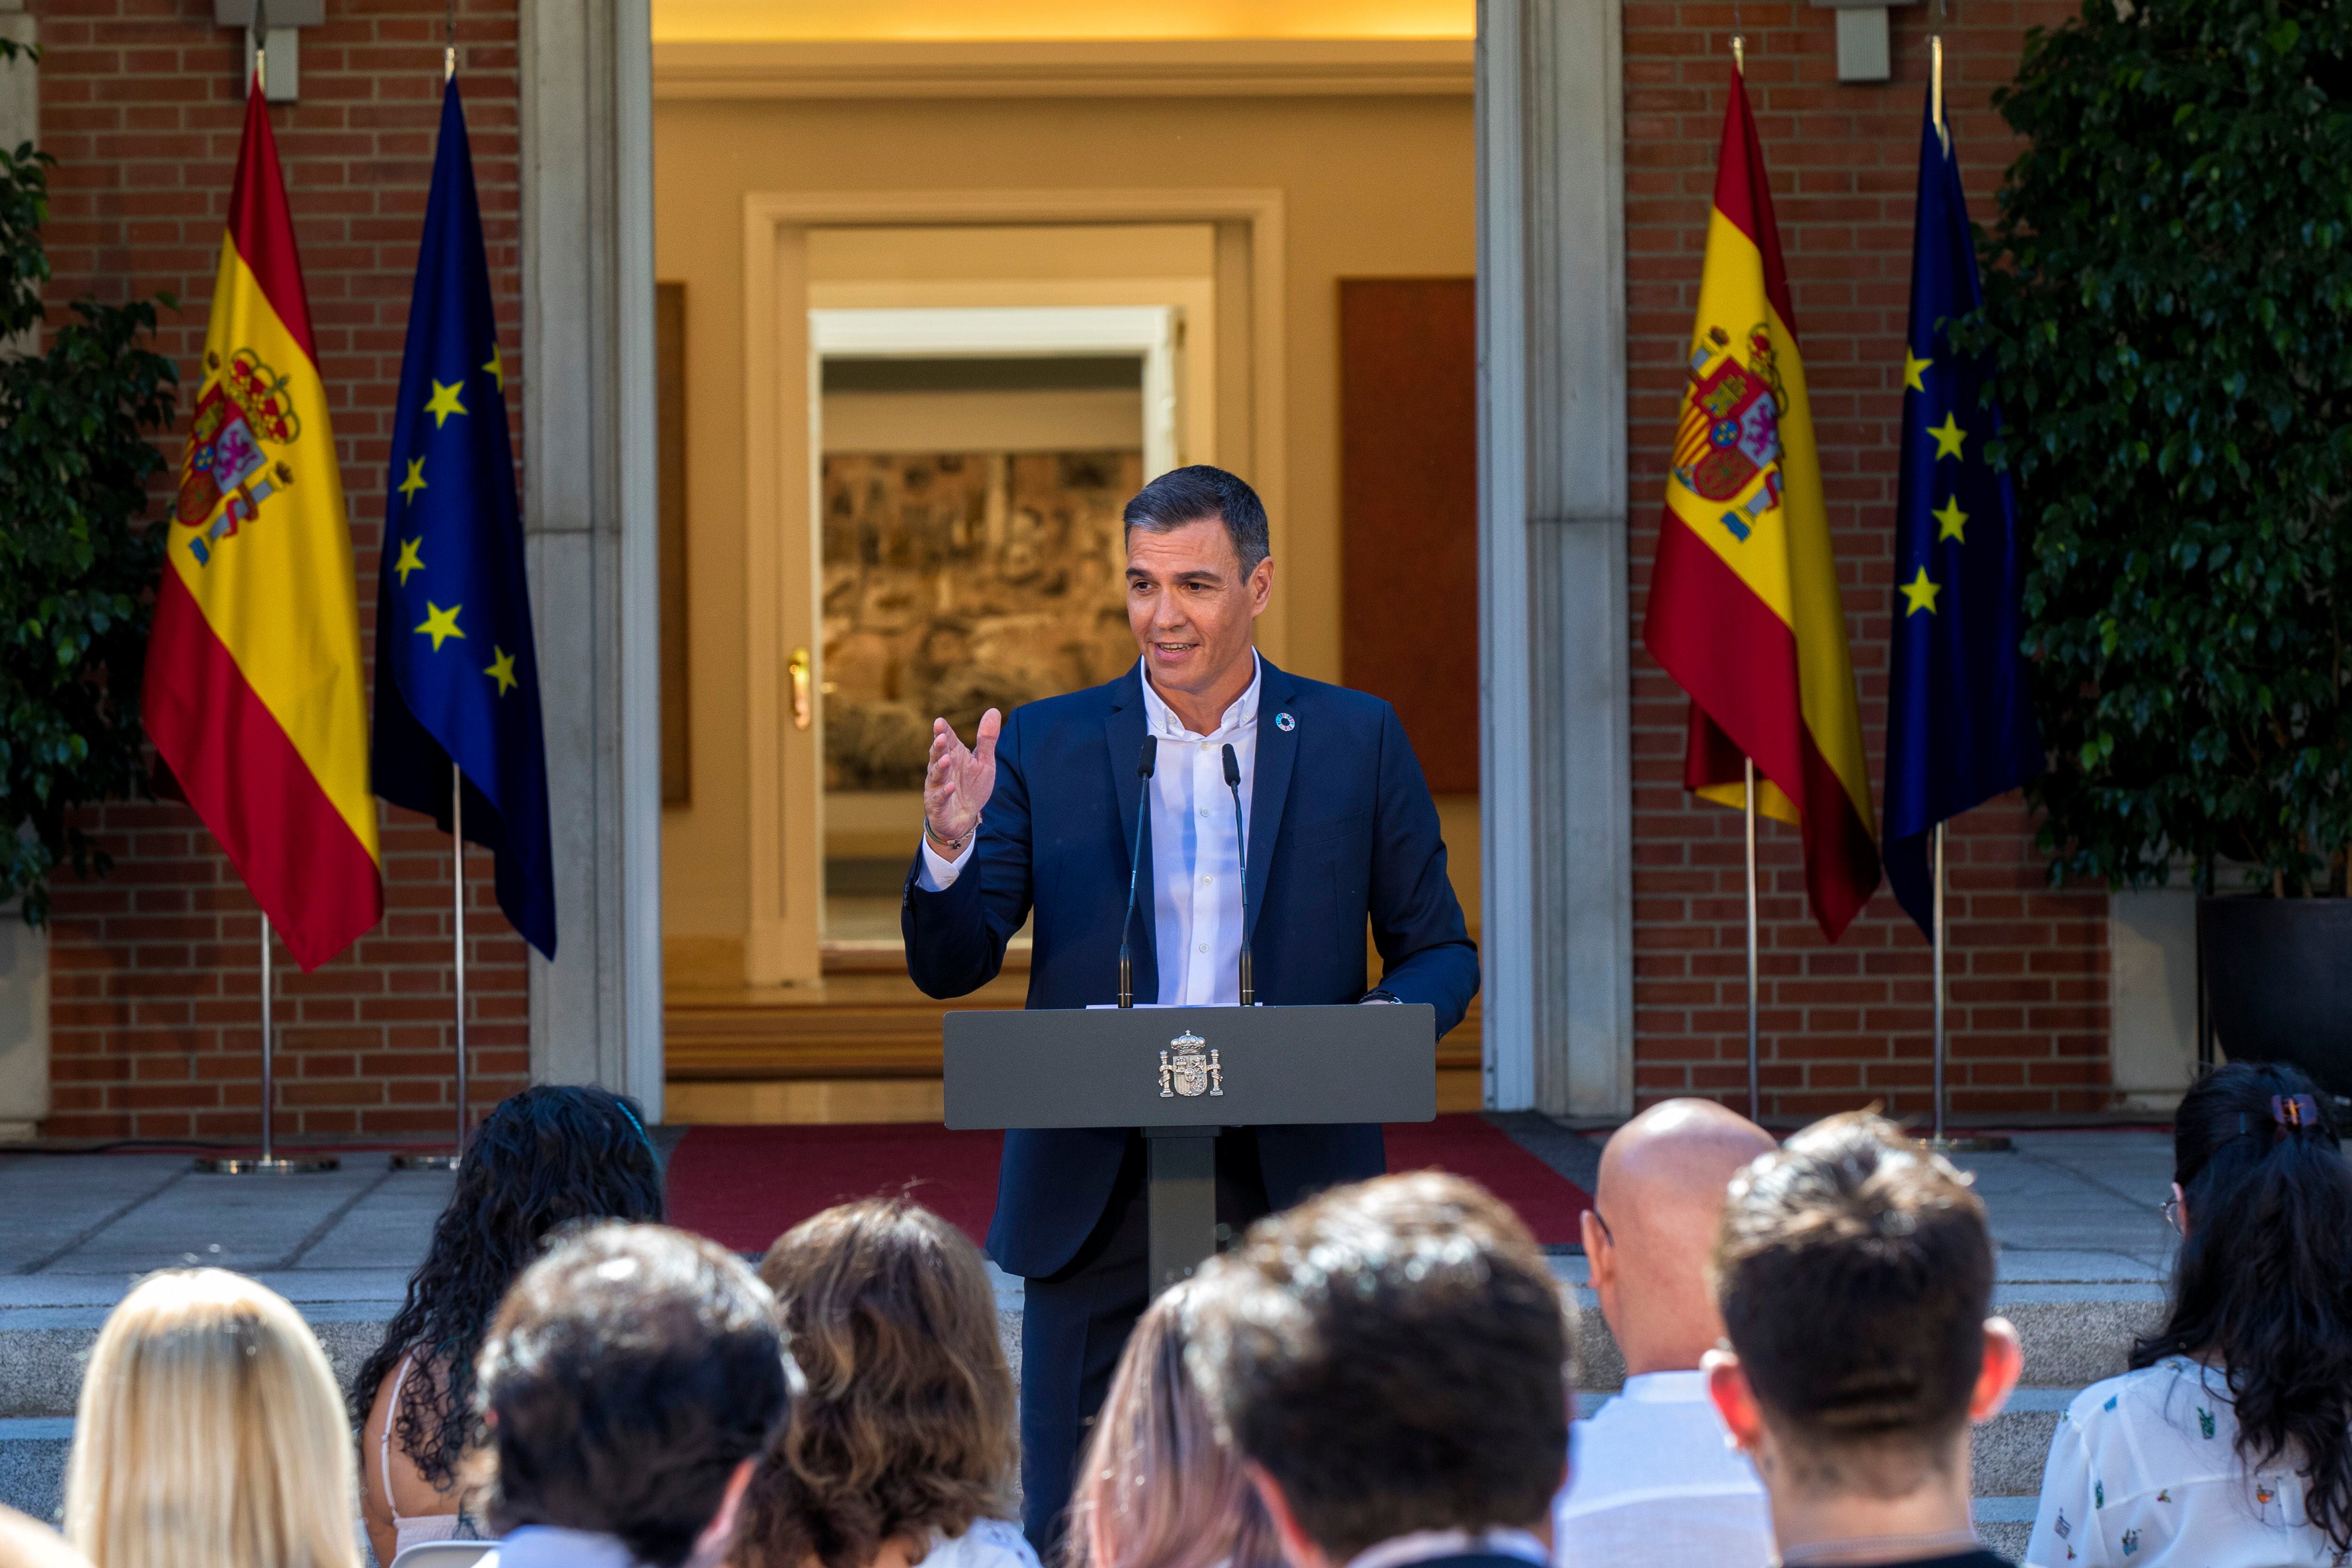 El presidente del Gobierno, Pedro Sánchez, inaugura el curso político en un acto que tiene a los ciudadanos como protagonistas. 